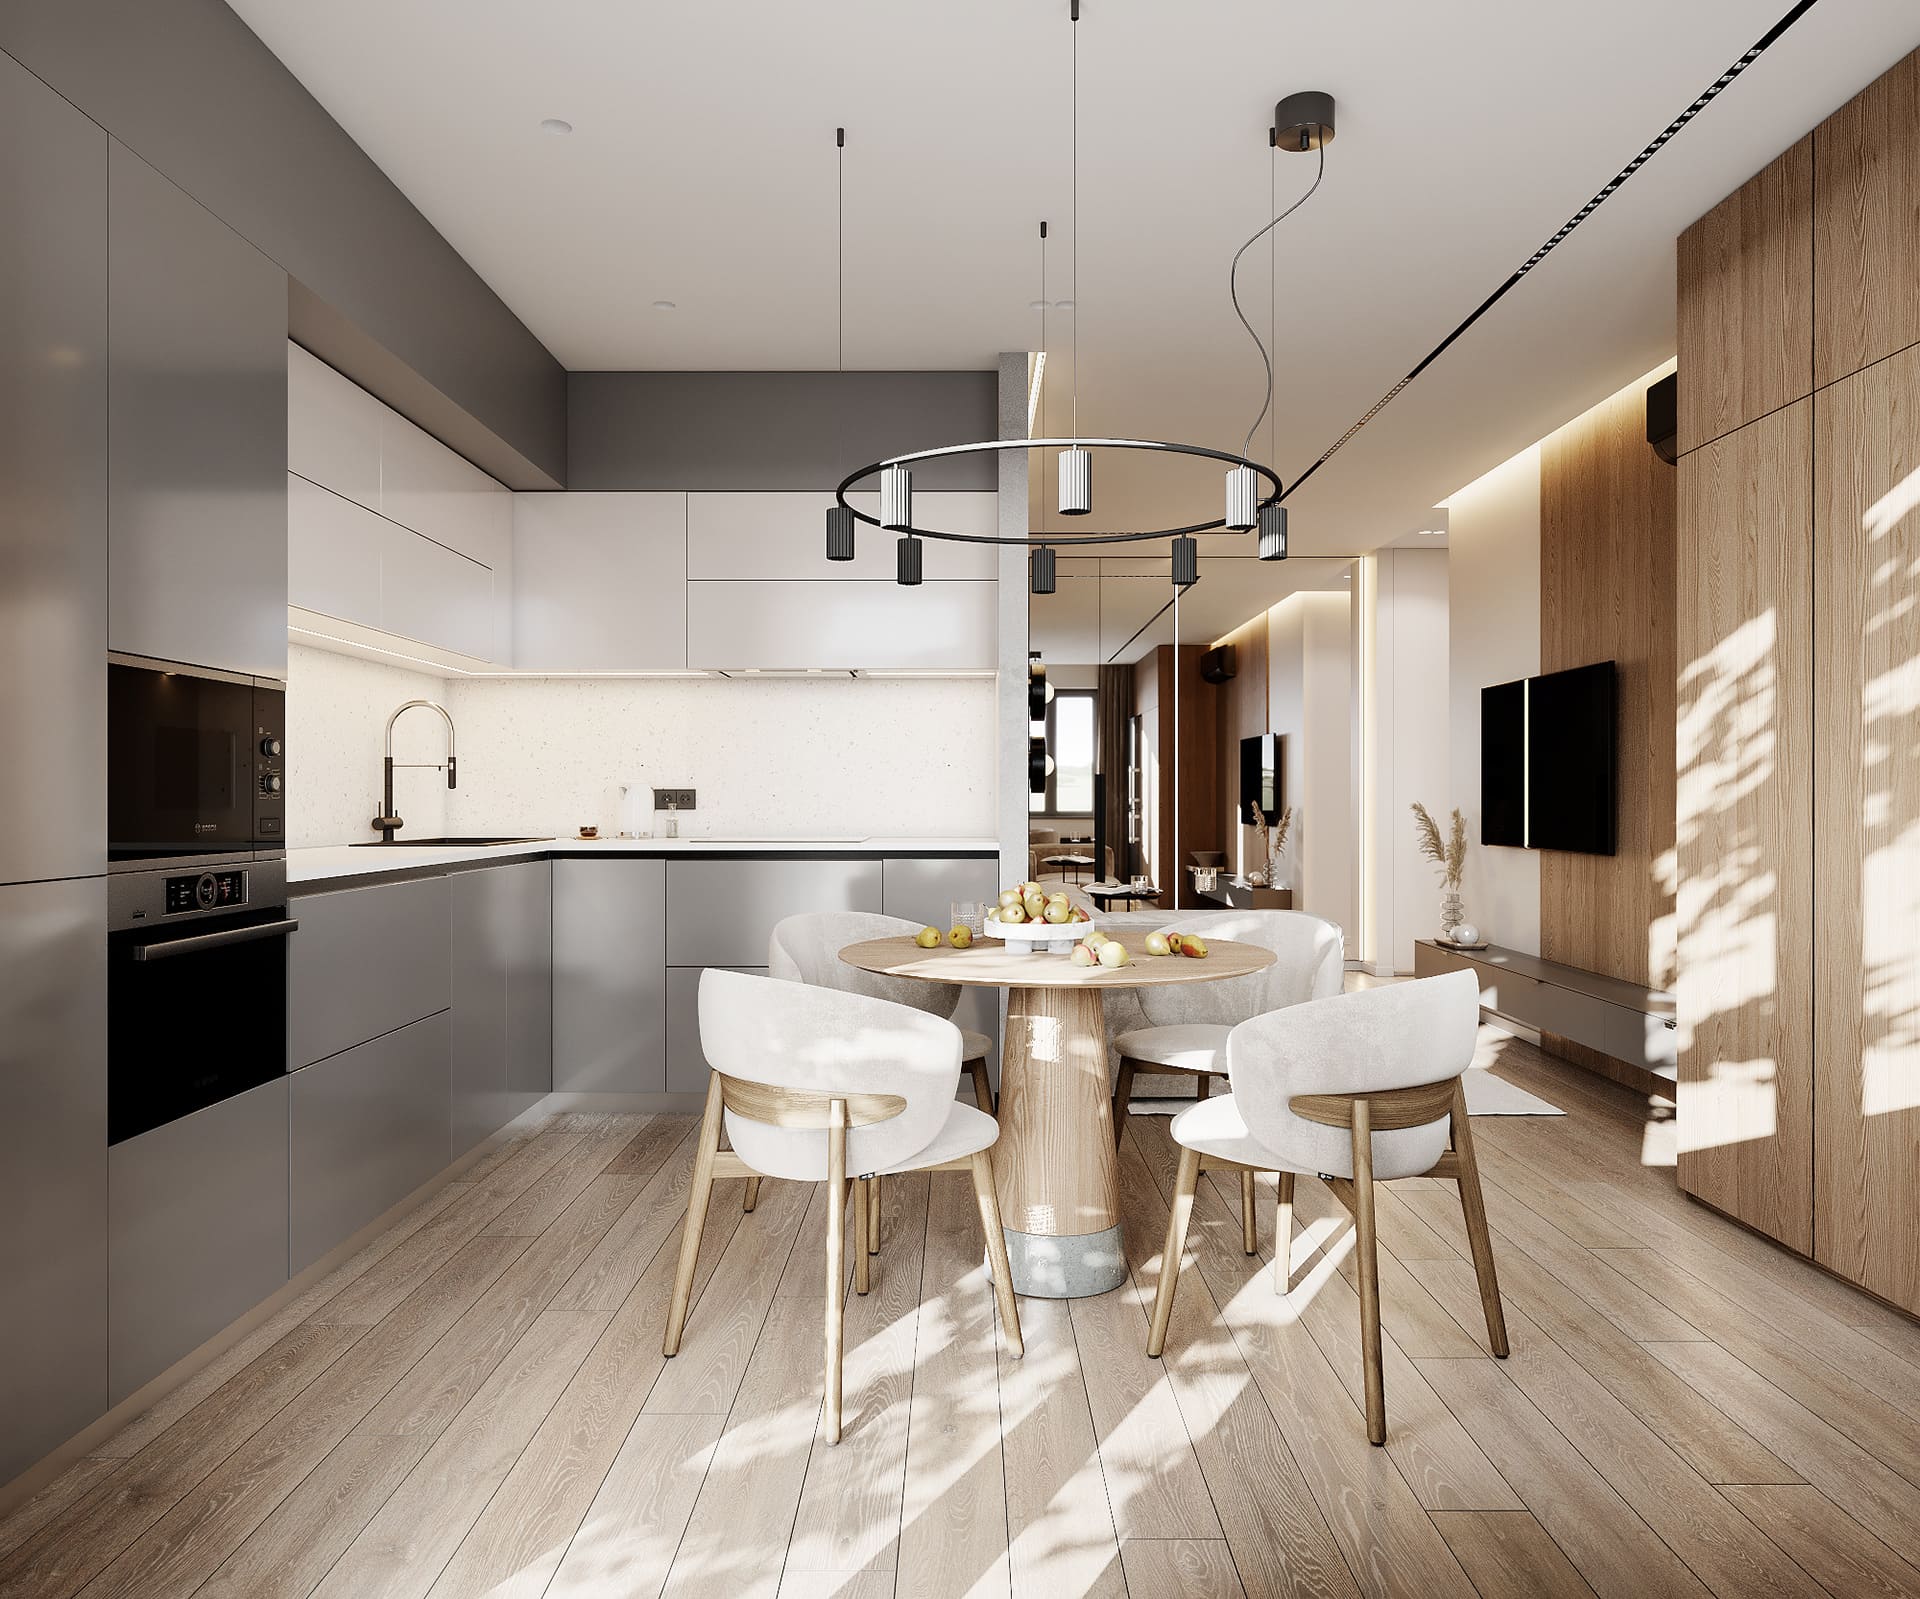 Лаконичная квартира в стиле минимализм, кухня-гостинная, фото 16